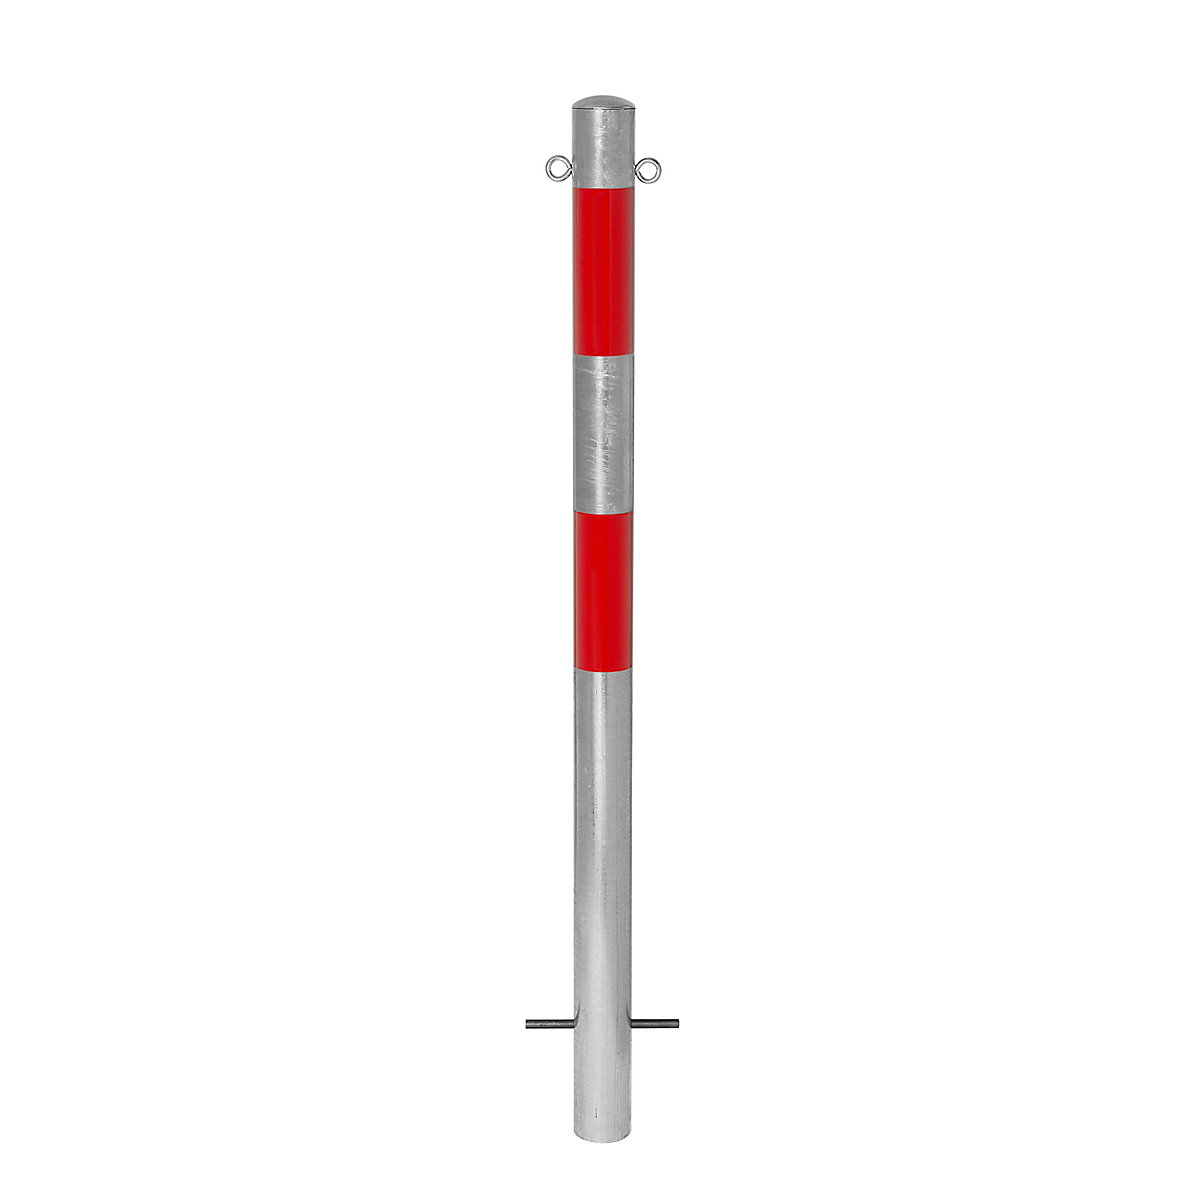 Stup za ograđivanje, za betoniranje, Ø 90 mm, vruće pocinčana izvedba / reflektiranje u crvenoj boji, 2 ušice-4